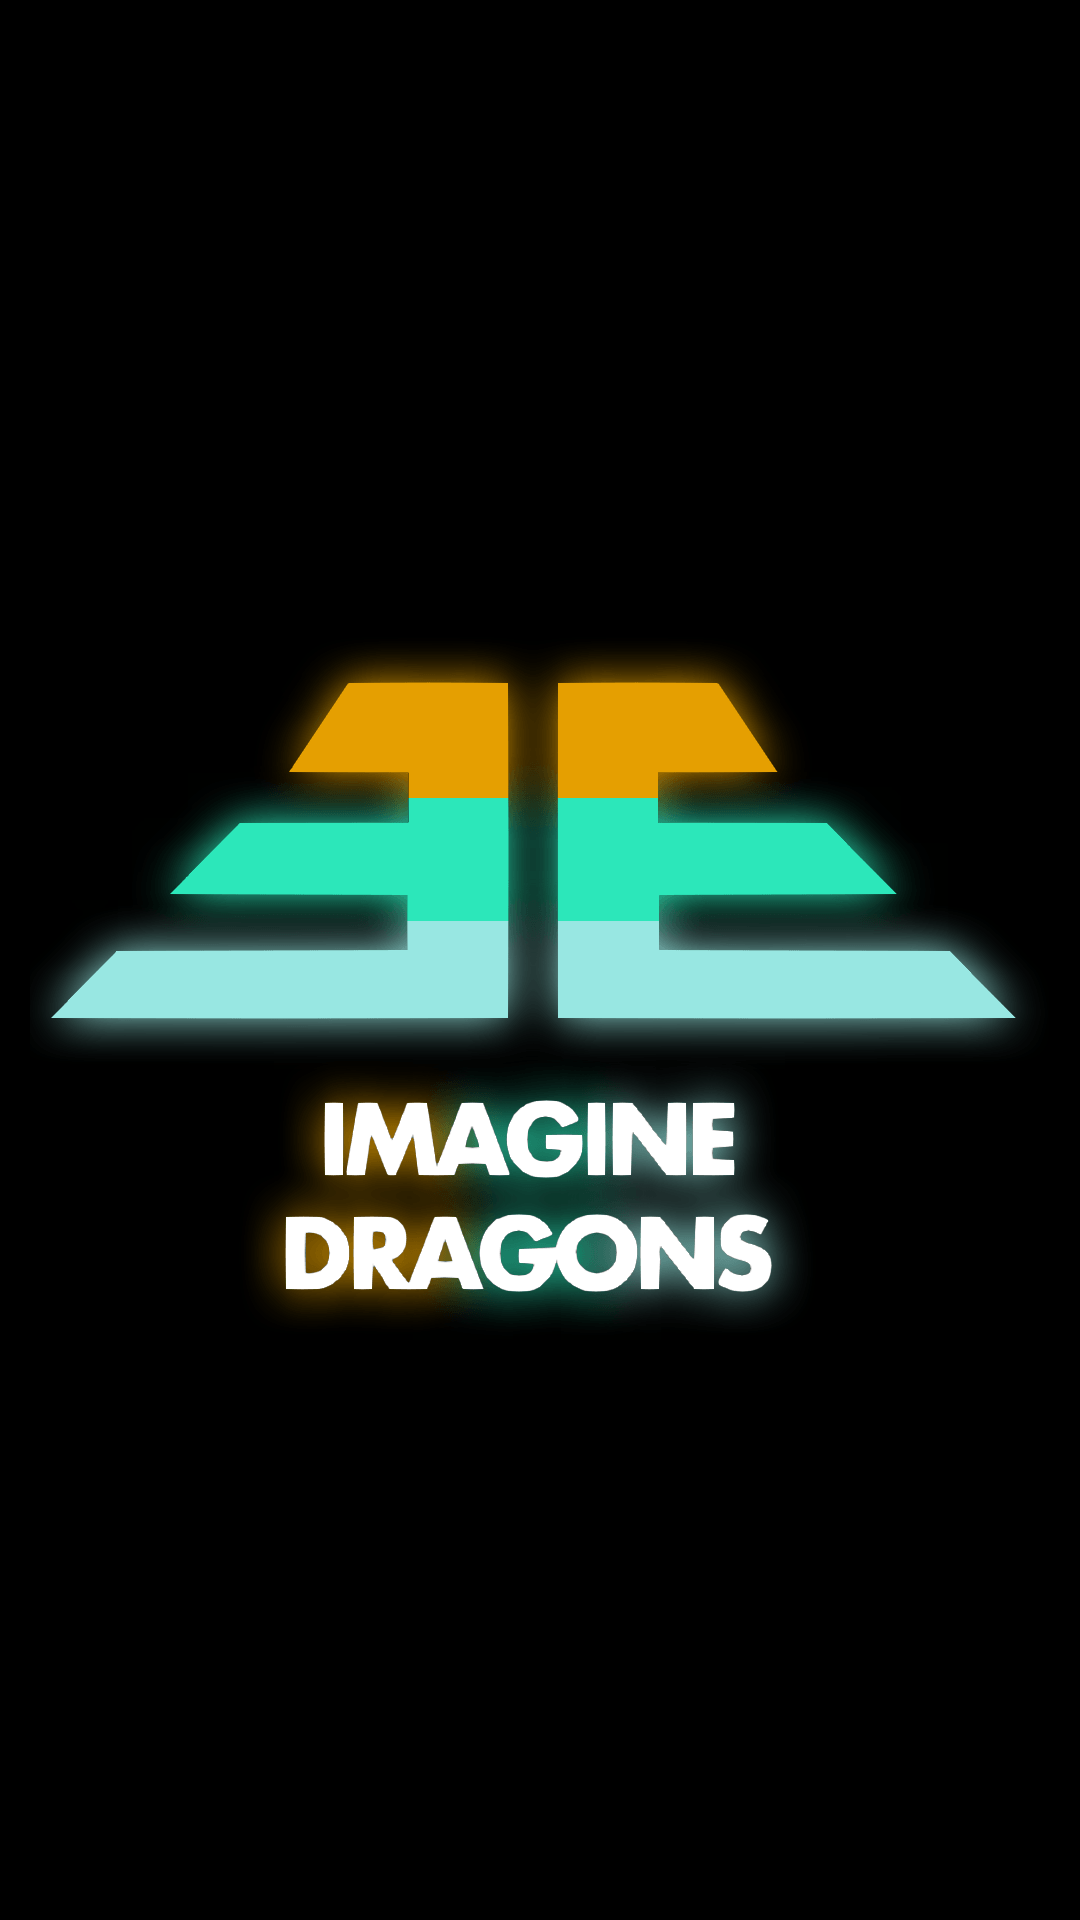 Hình nền imagine dragon logo độc đáo và thu hút cho máy tính của bạn